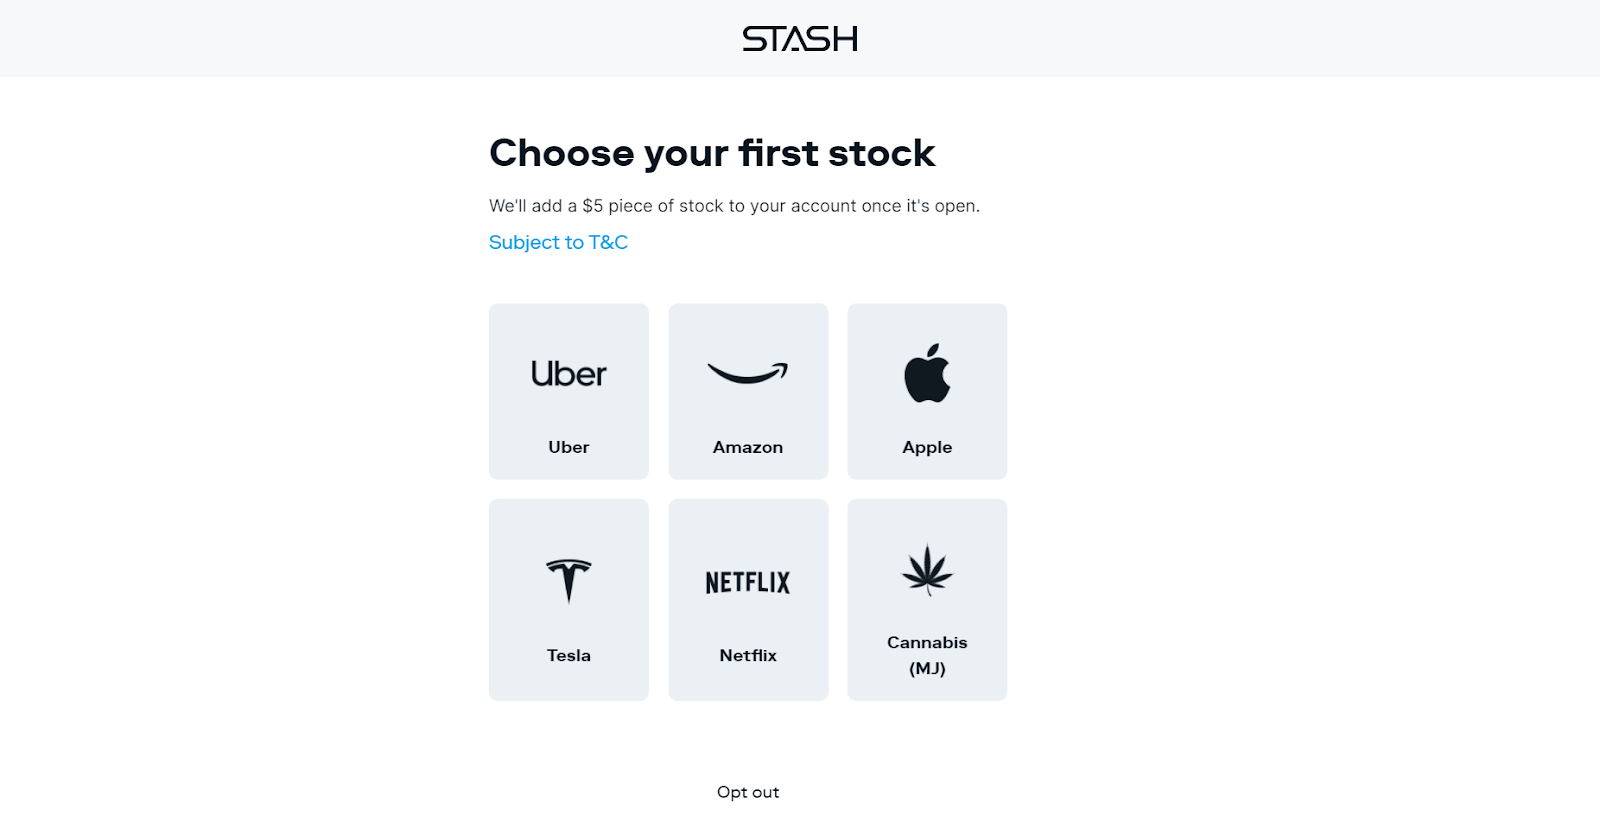 Обзор Stash - 5 долларов на первую инвестицию